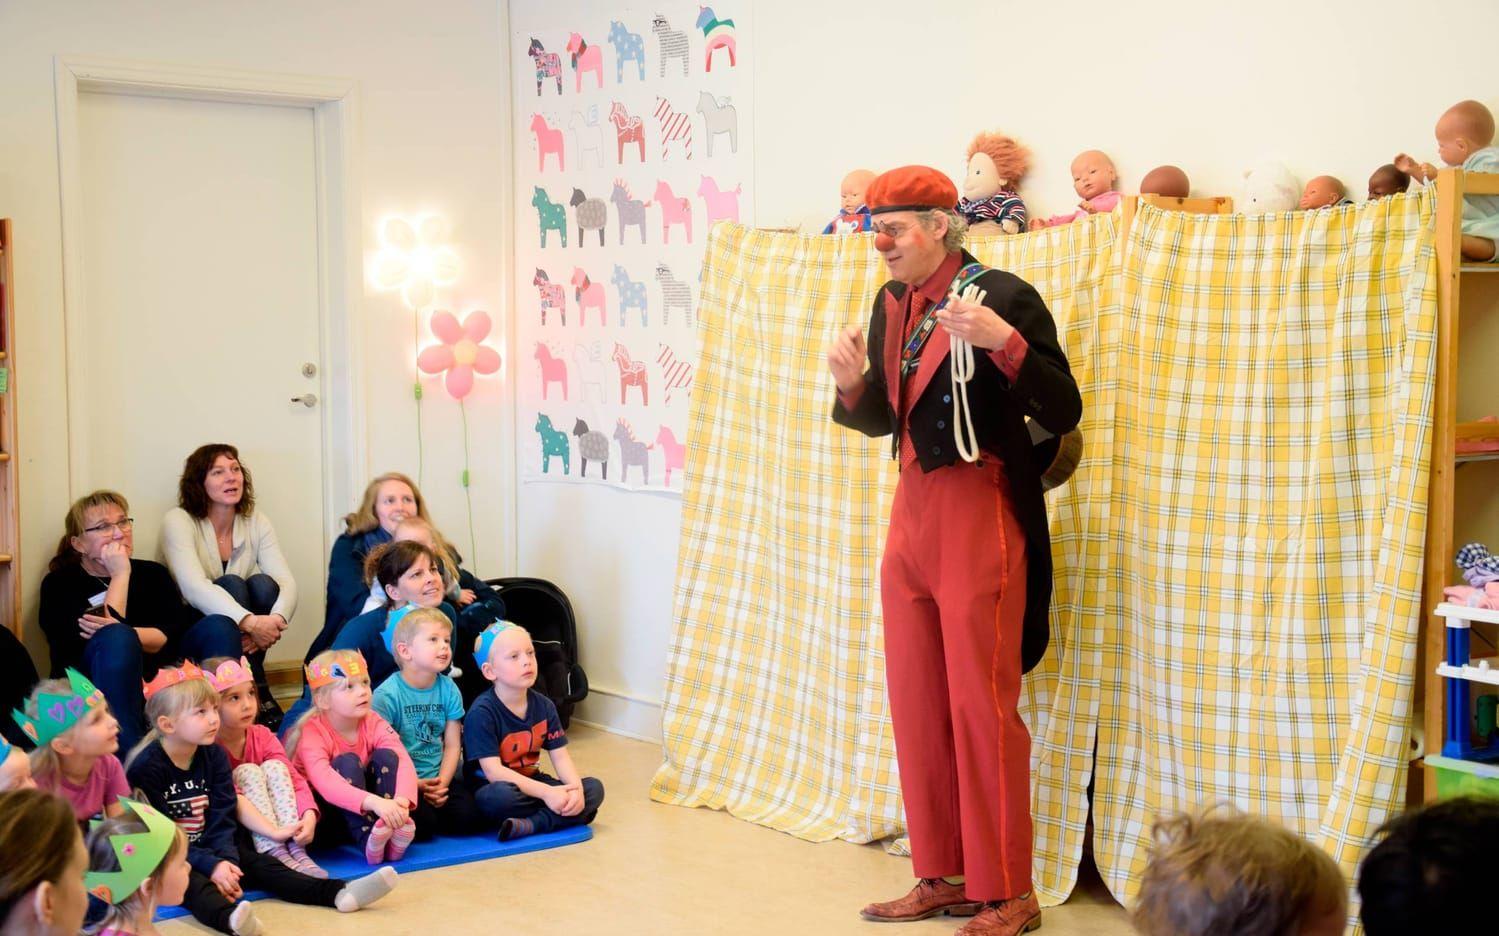 Clownen Mattis underhöll barn och föräldrar på onsdagens 10-årsjubileum. Foto: Malin Rindvik